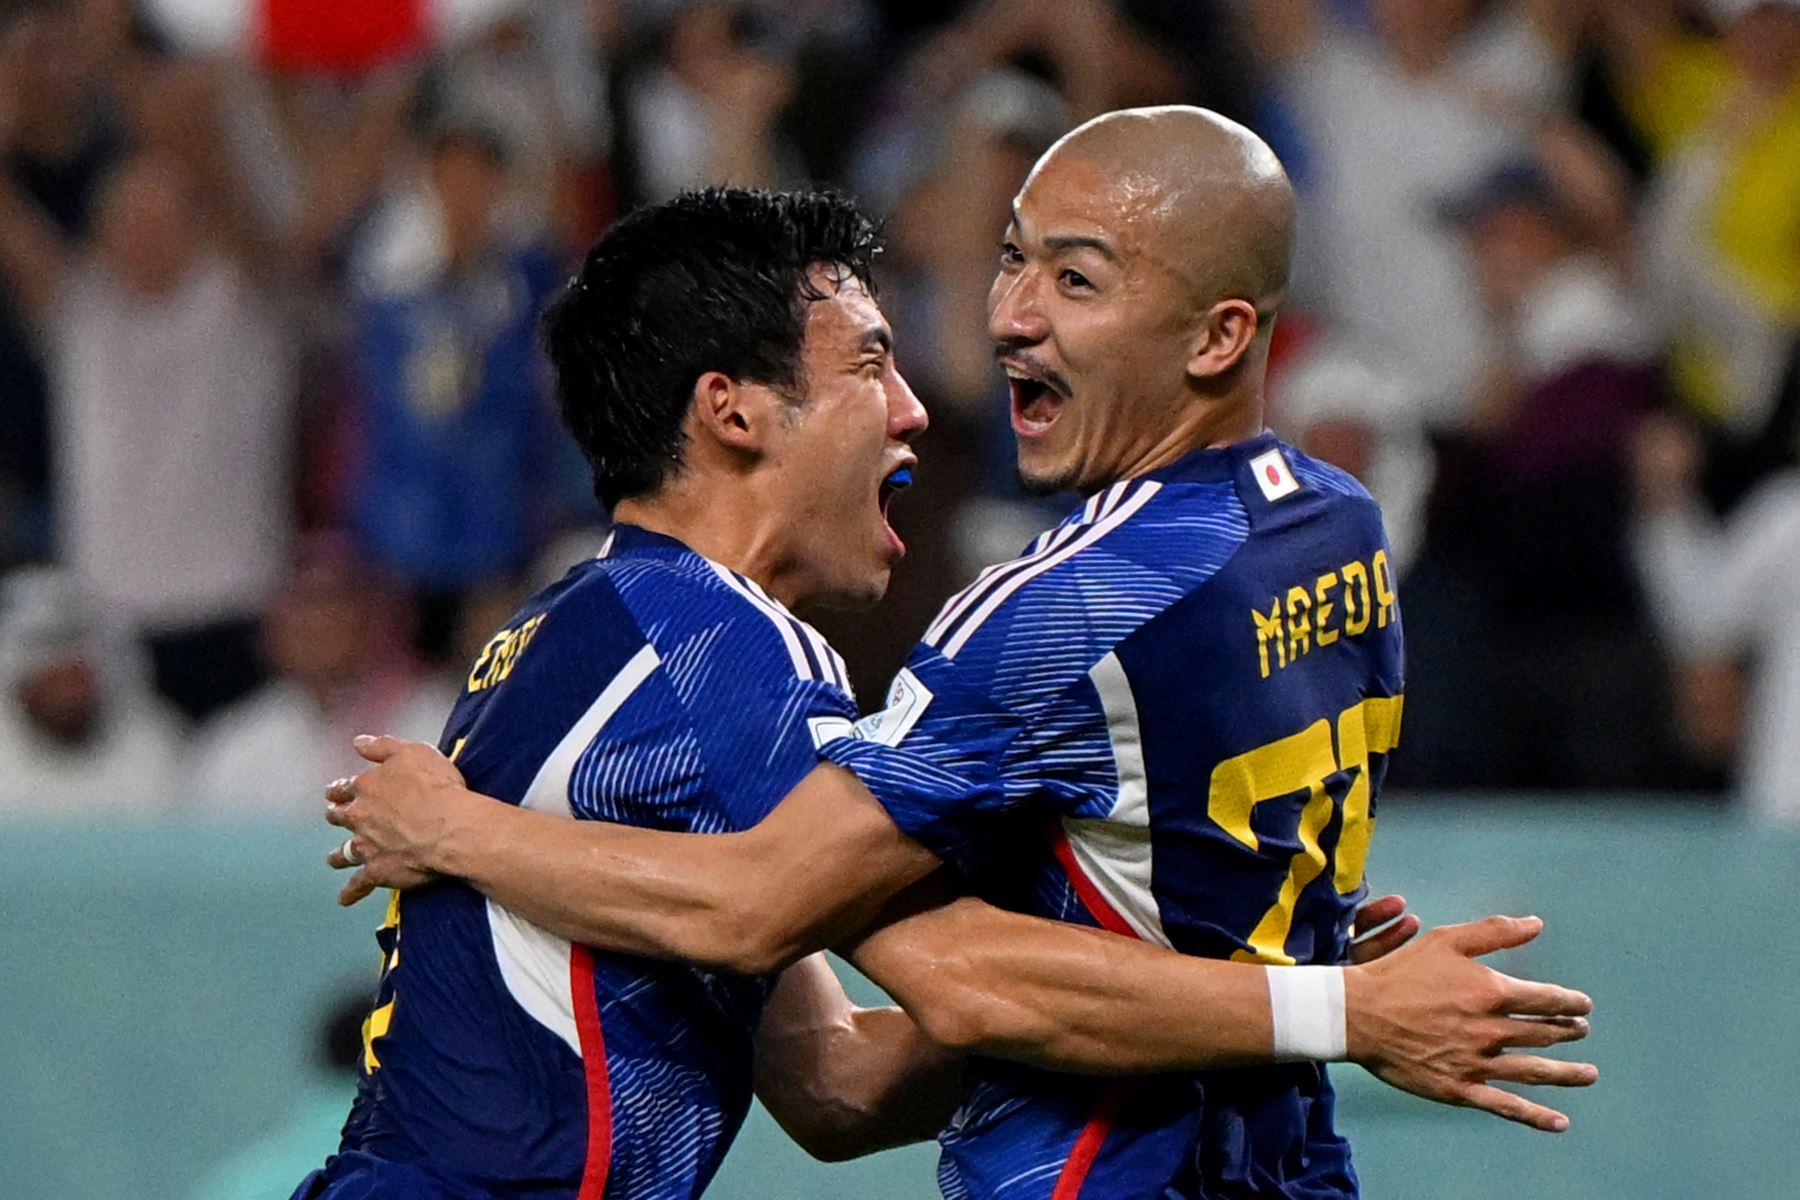 El delantero japonés Daizen Maeda celebra marcar el primer gol de su equipo durante el partido de fútbol de octavos de final de la Copa Mundial Qatar 2022 entre Japón y Croacia en el estadio Al-Janoub en Al-Wakrah, al sur de Doha, el 5 de diciembre de 2022.
Foto: AFP